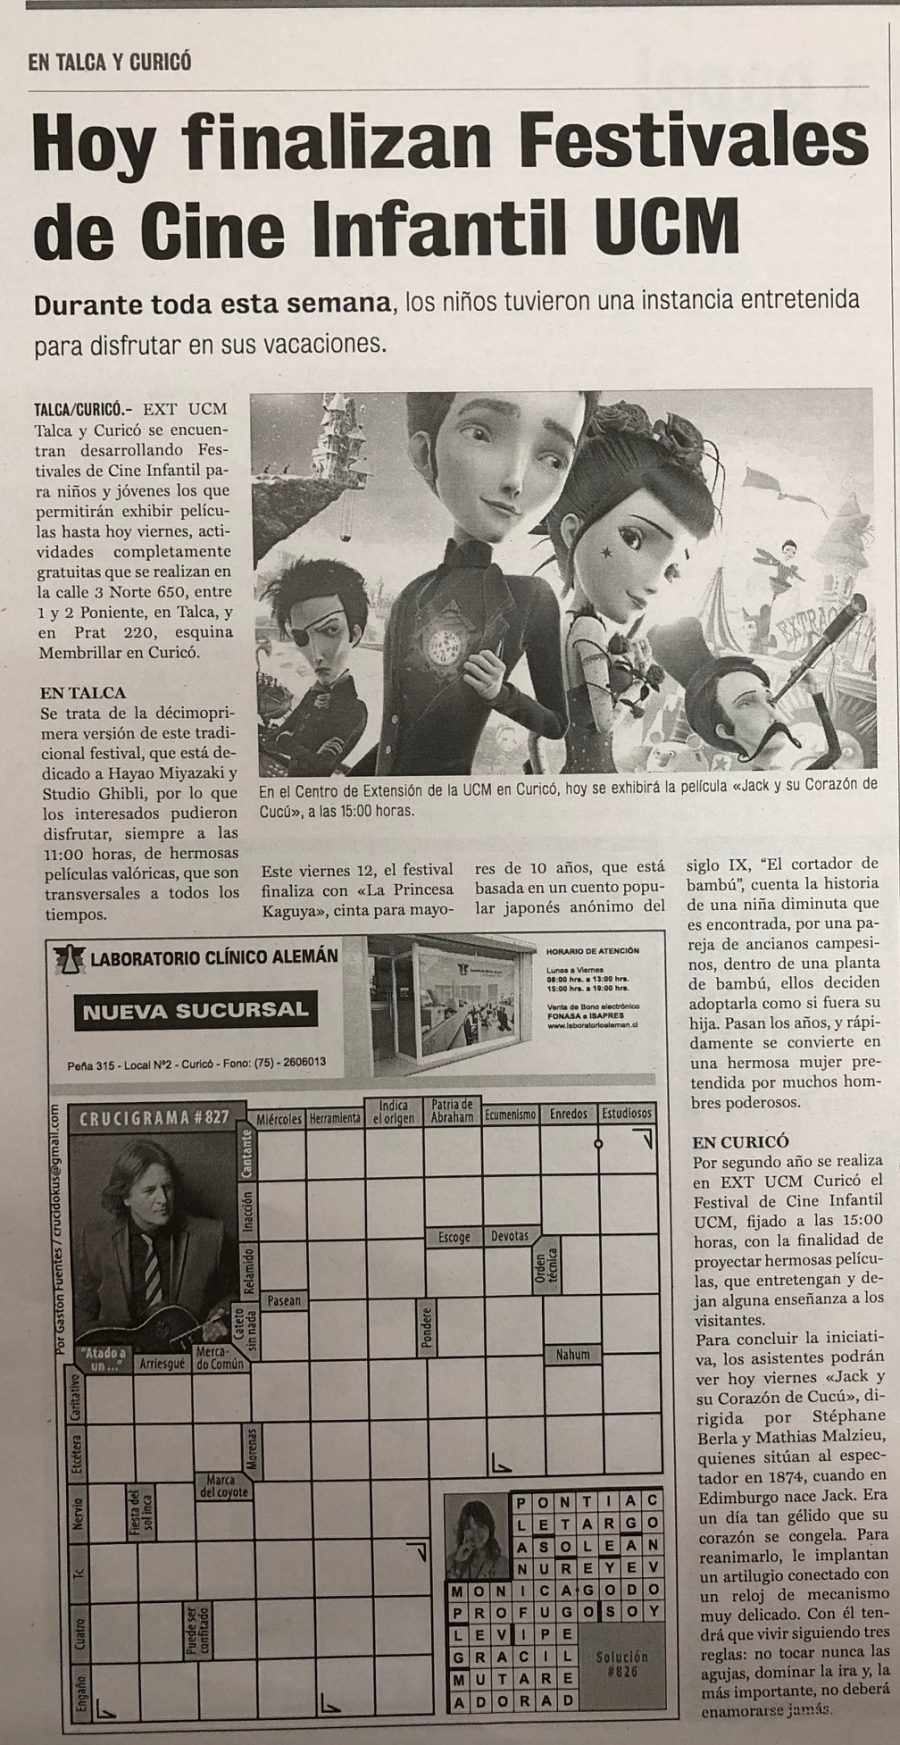 “12 de enero en Diario La Prensa: “Hoy finalizan Festivales de Cine Infantil UCM”